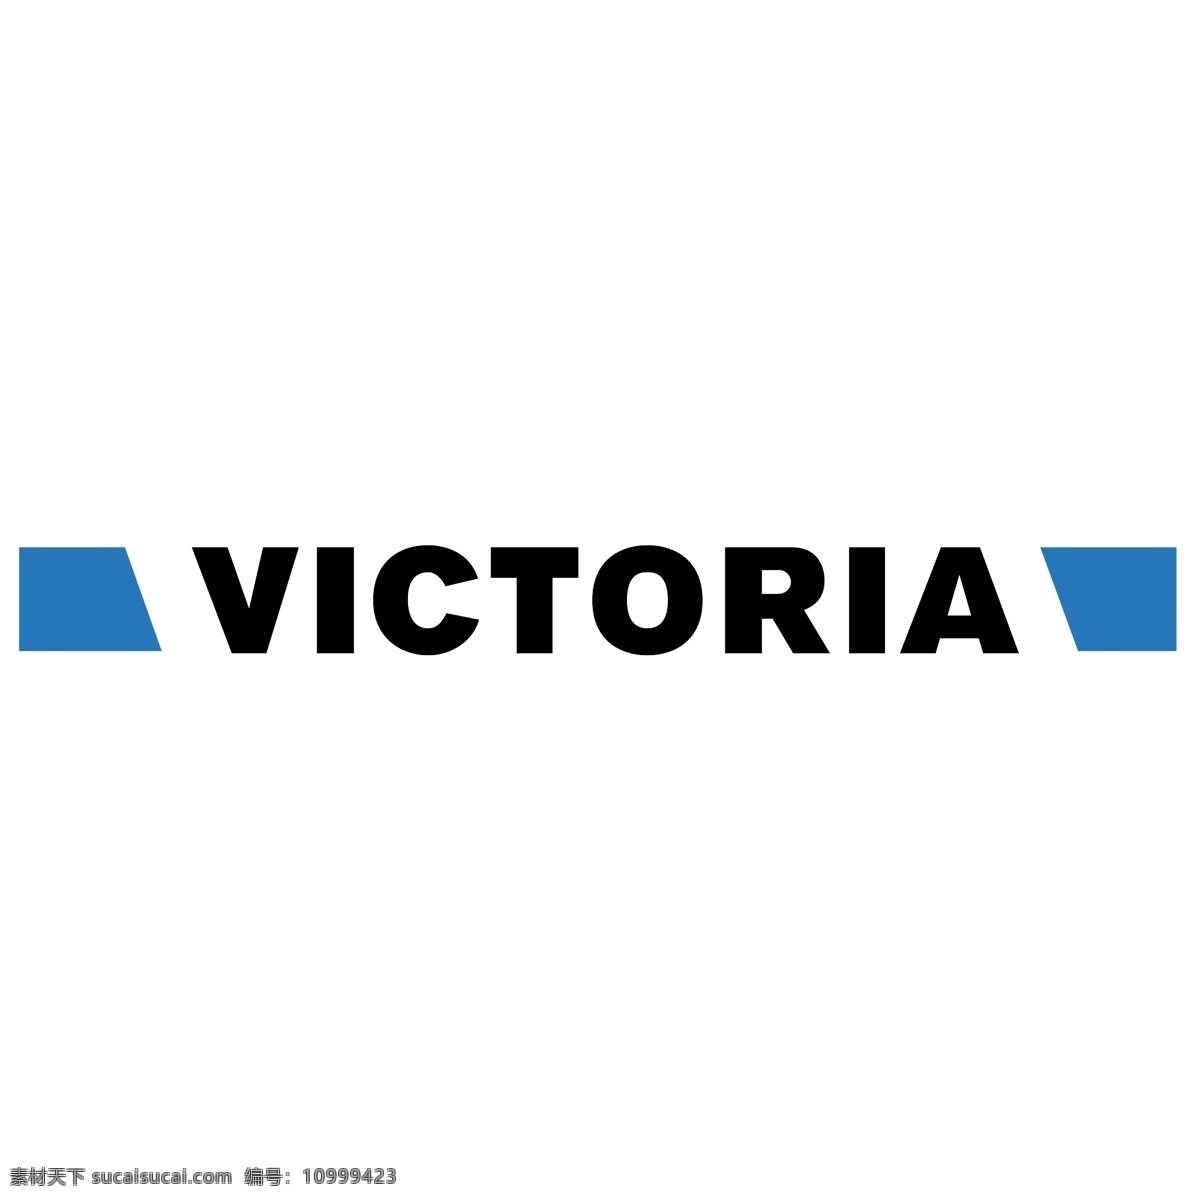 维多利亚1 维多利亚 地图 加拿大 桑 列治 半岛 轮廓 图 略图 澳大利亚 维多利亚州 澳大利亚地图 维多利亚旗 瑞士 大学 矢量图 矢量 图标 建筑家居